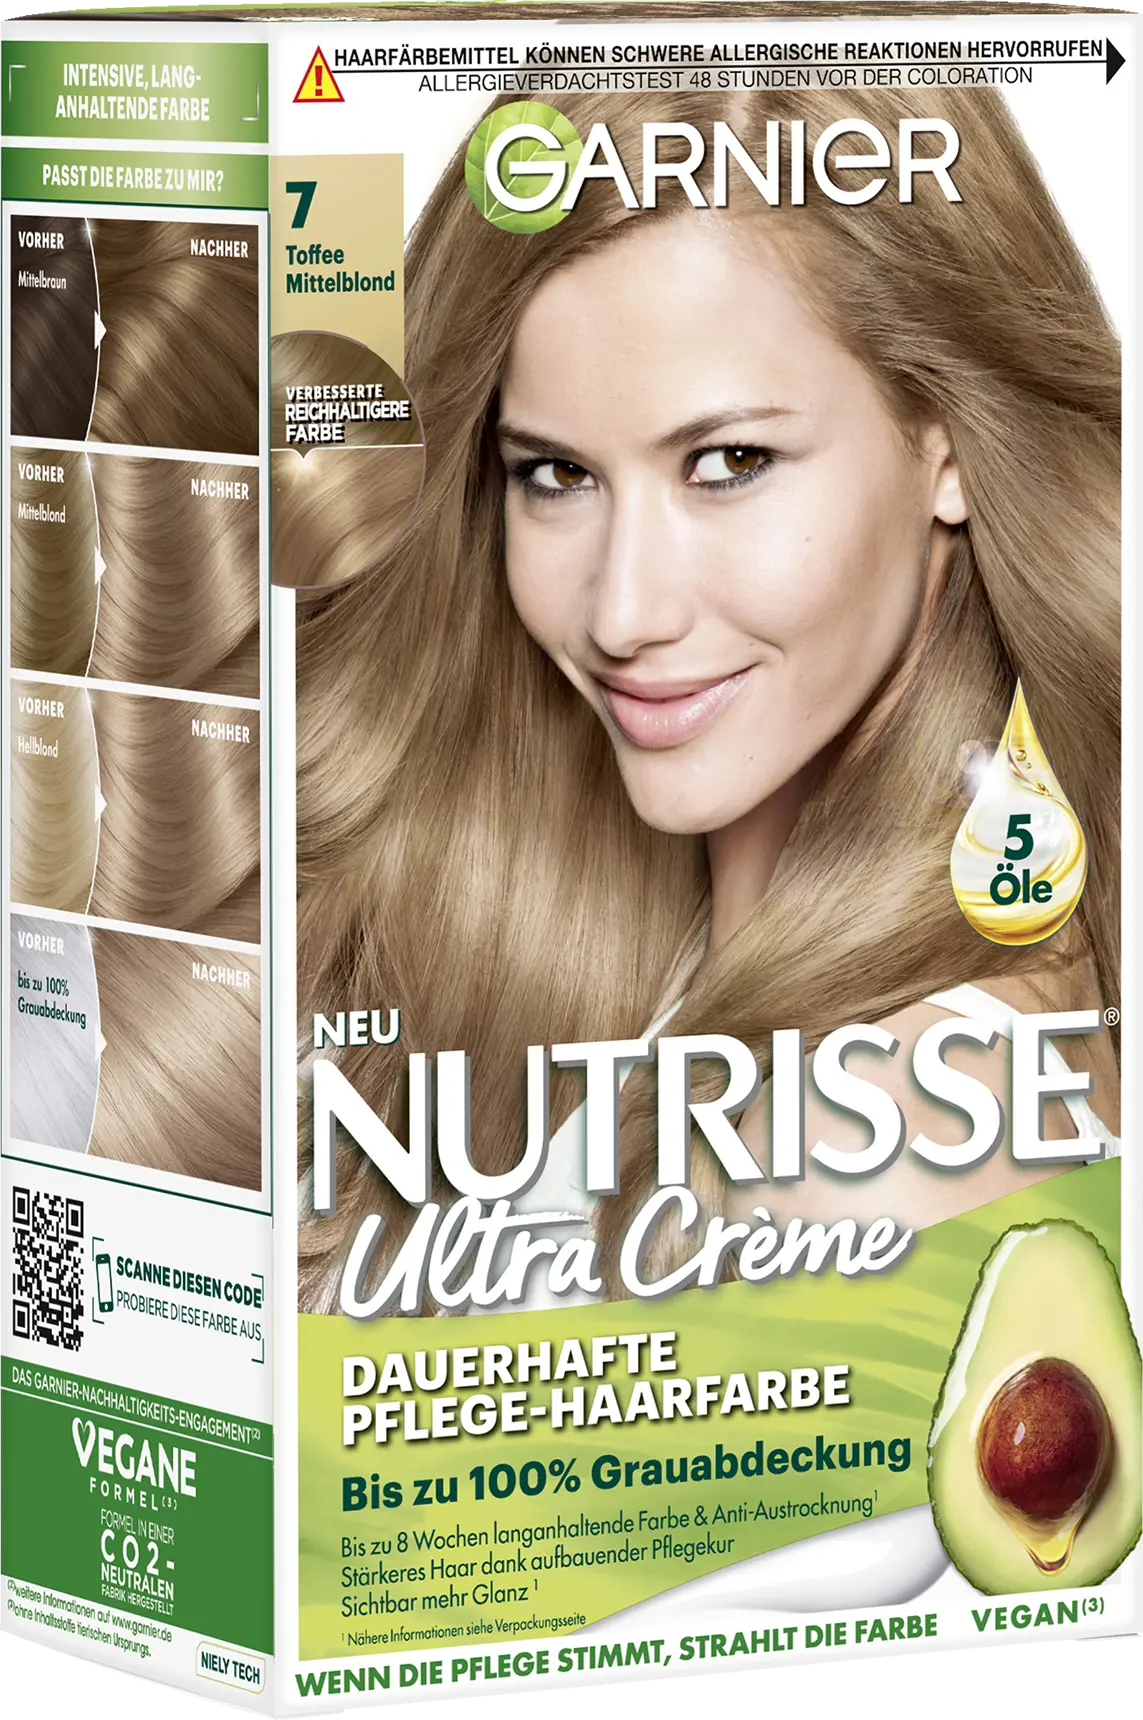 Color Toffee - Blonde Hair 7 Medium Nutrisse Garnier haarbiologie Permanent